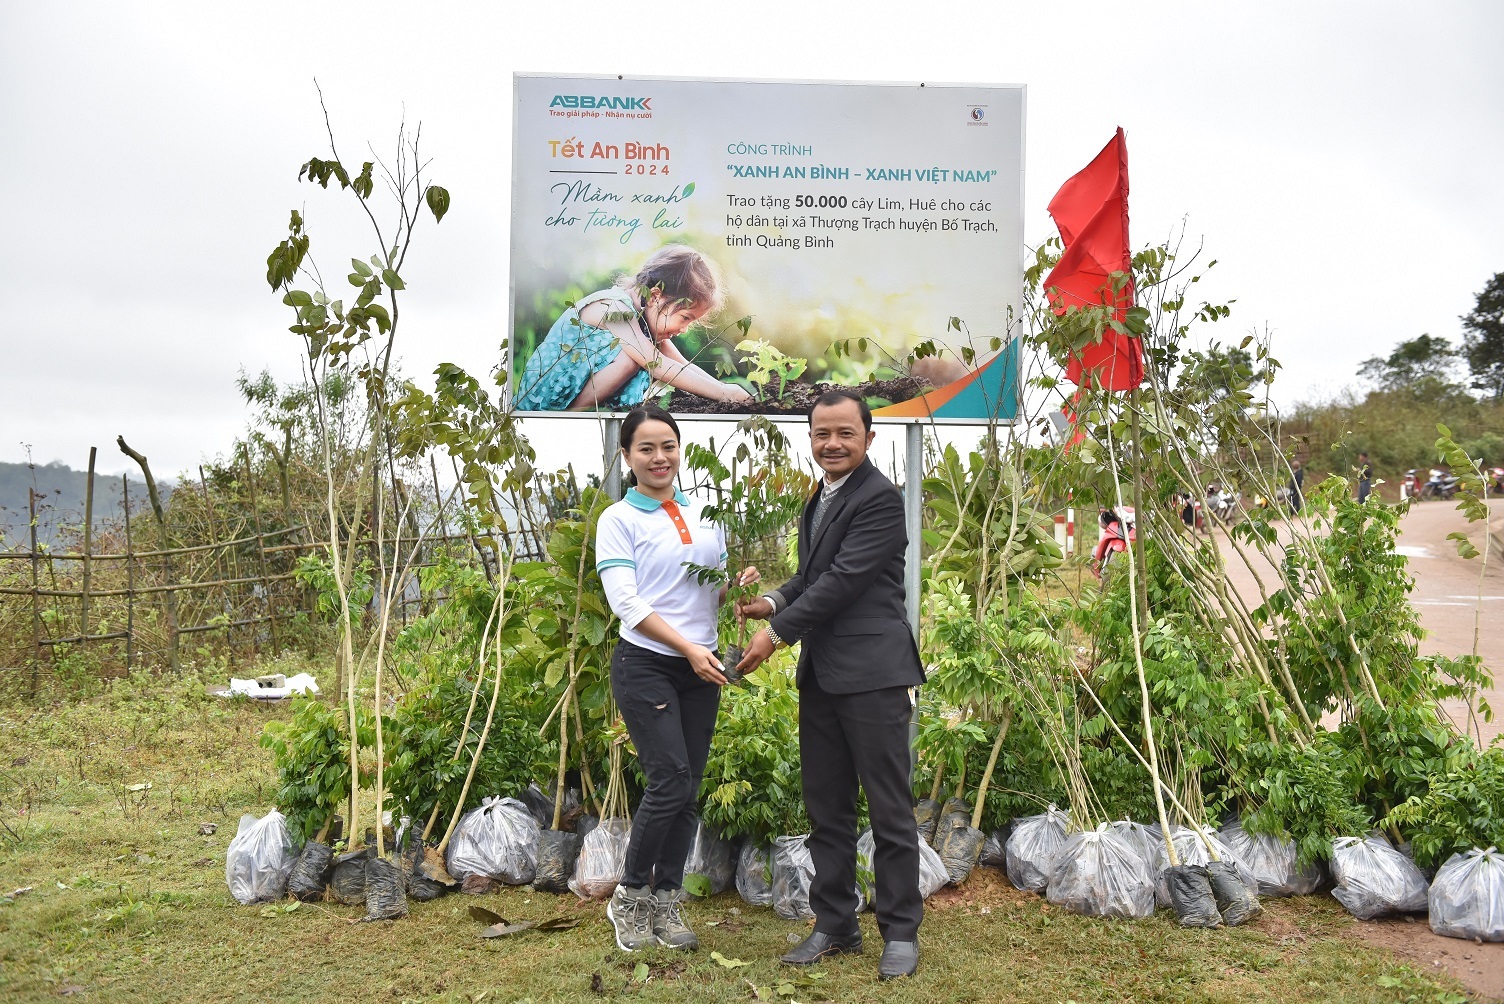 ABBANK thành công gây quỹ và chính thức trao tặng 50.000 cây giống gỗ lớn Lim, Huê cho các hộ dân khó khăn tại xã Thượng Trạch, huyện Bố Trạch, tỉnh Quảng Bình.